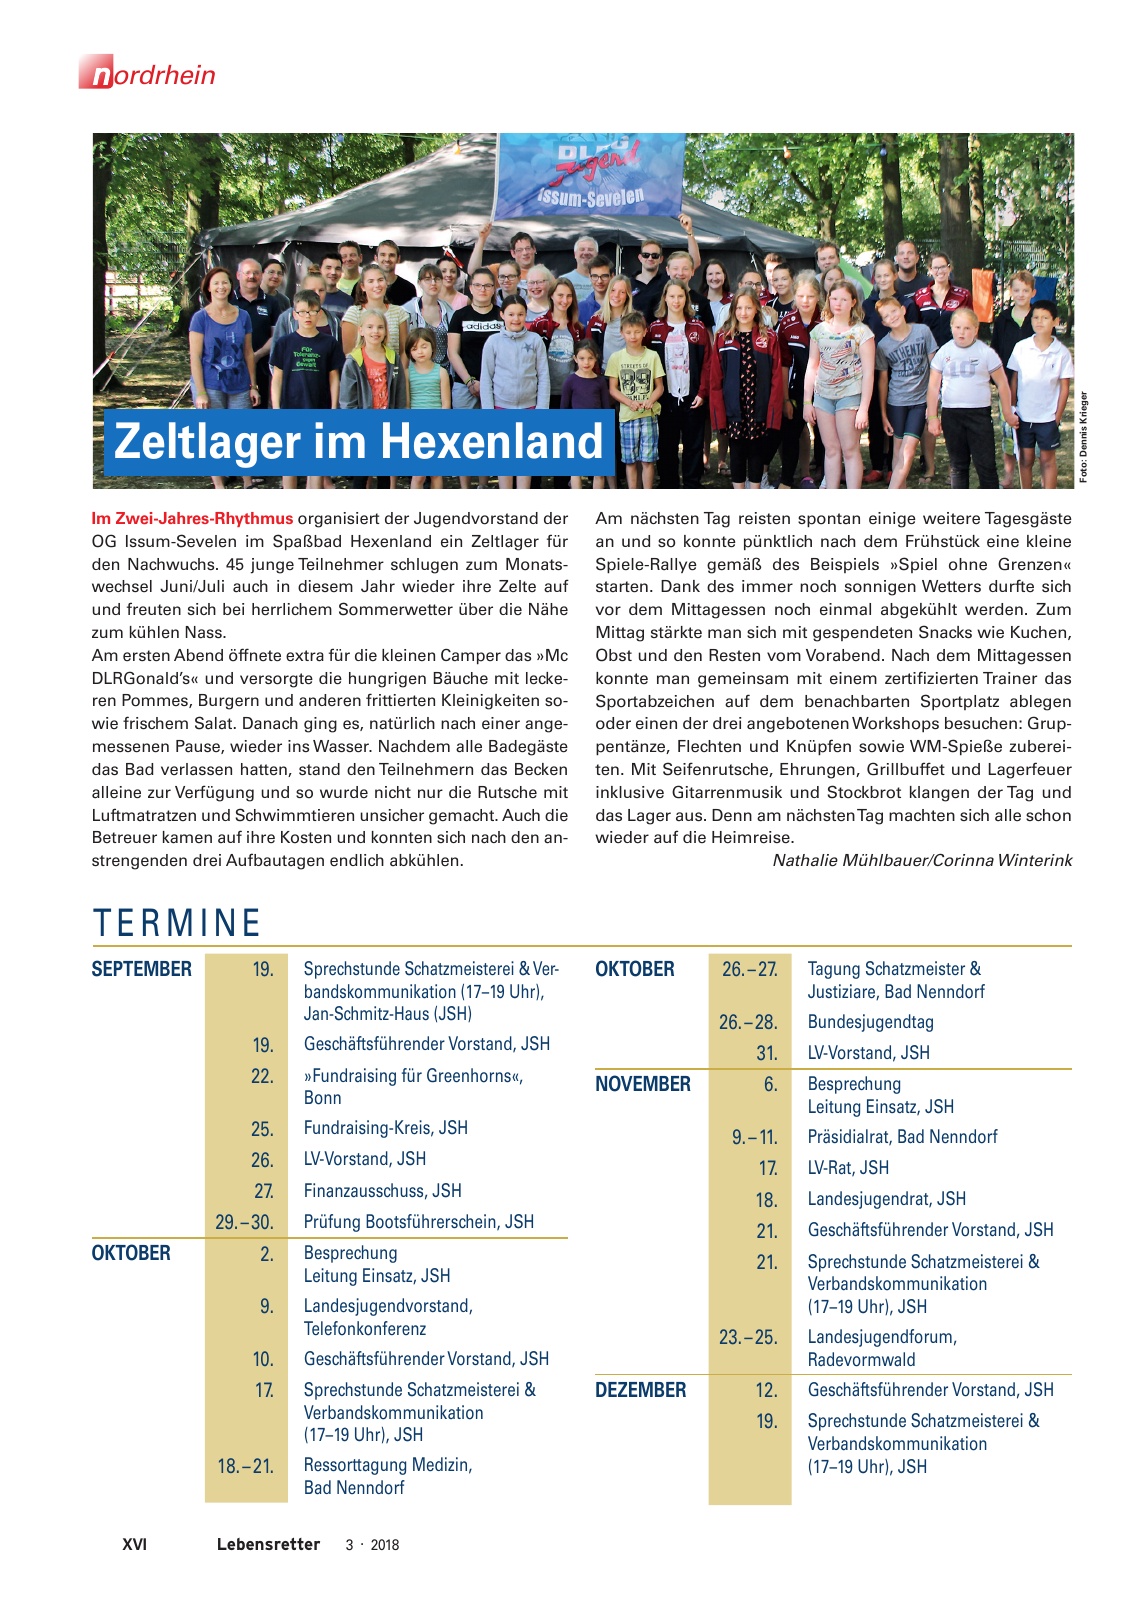 Vorschau Lebensretter 3/2018 - Regionalausgabe Nordrhein Seite 18